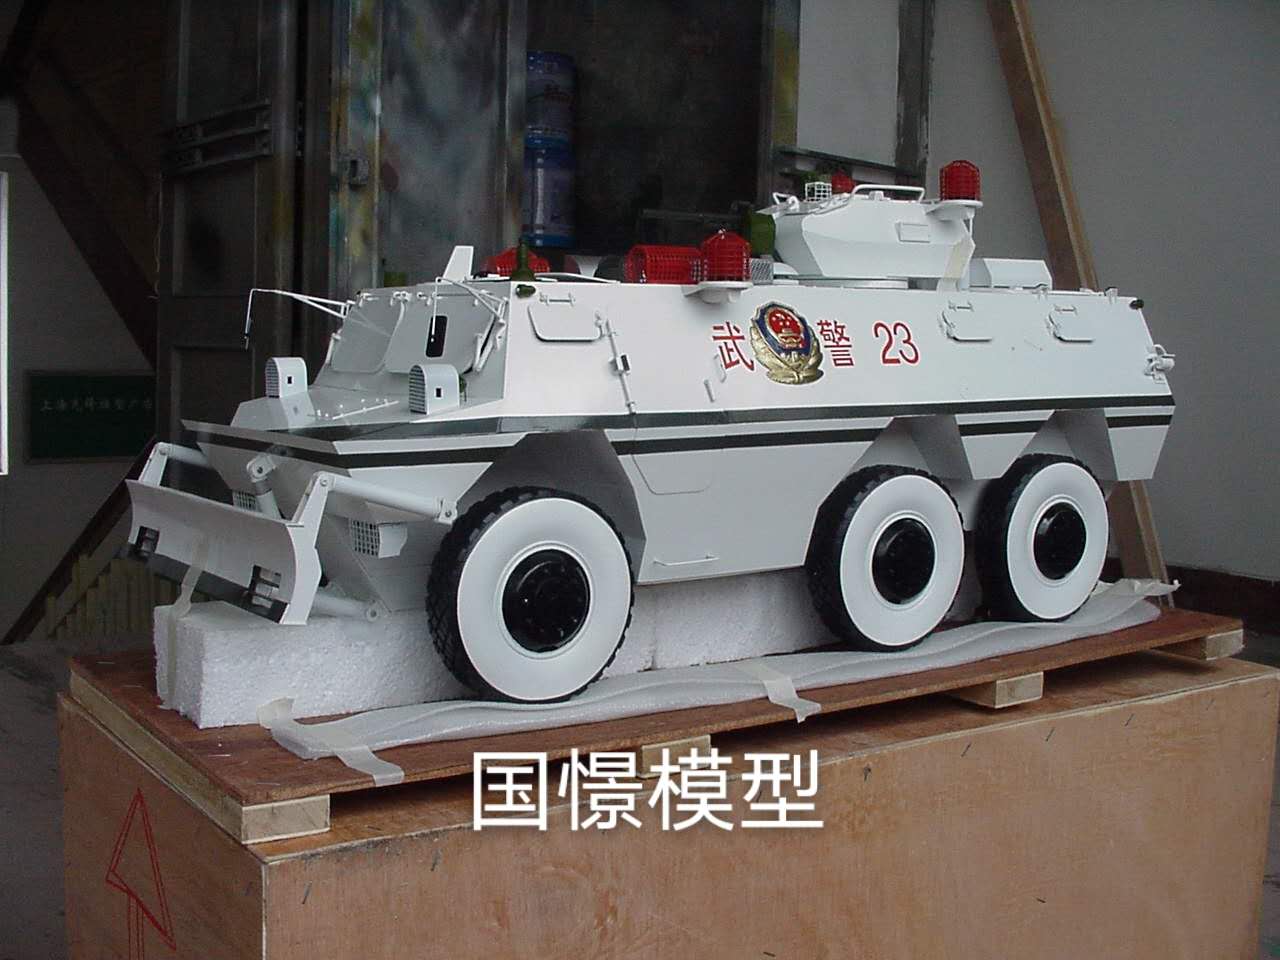 高唐县军事模型